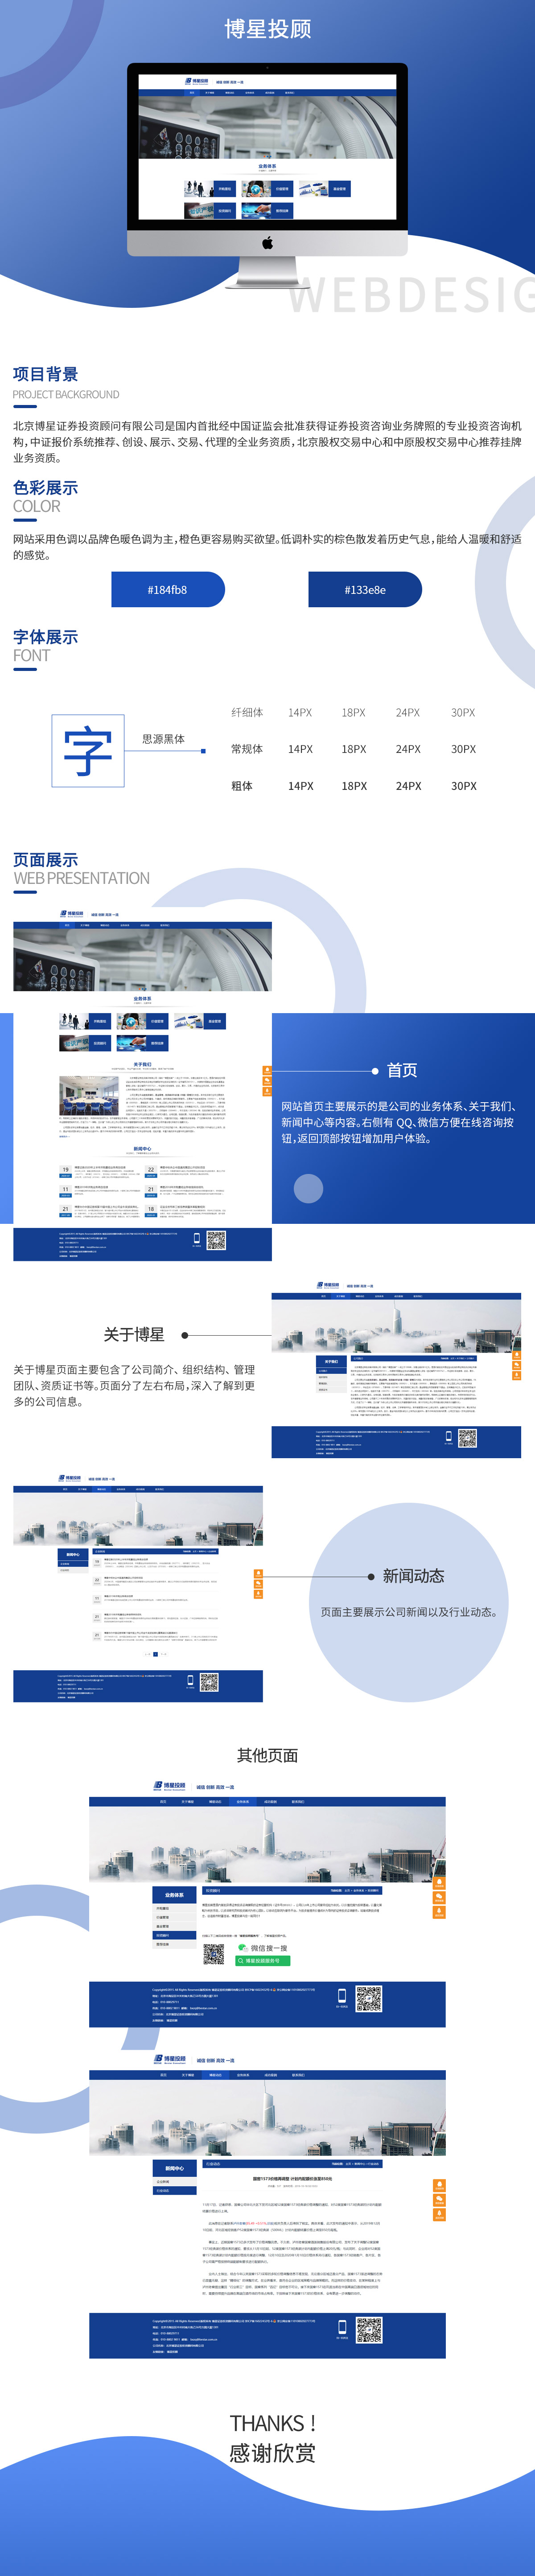 北京博星证券投资顾问有限企业品牌网站案例